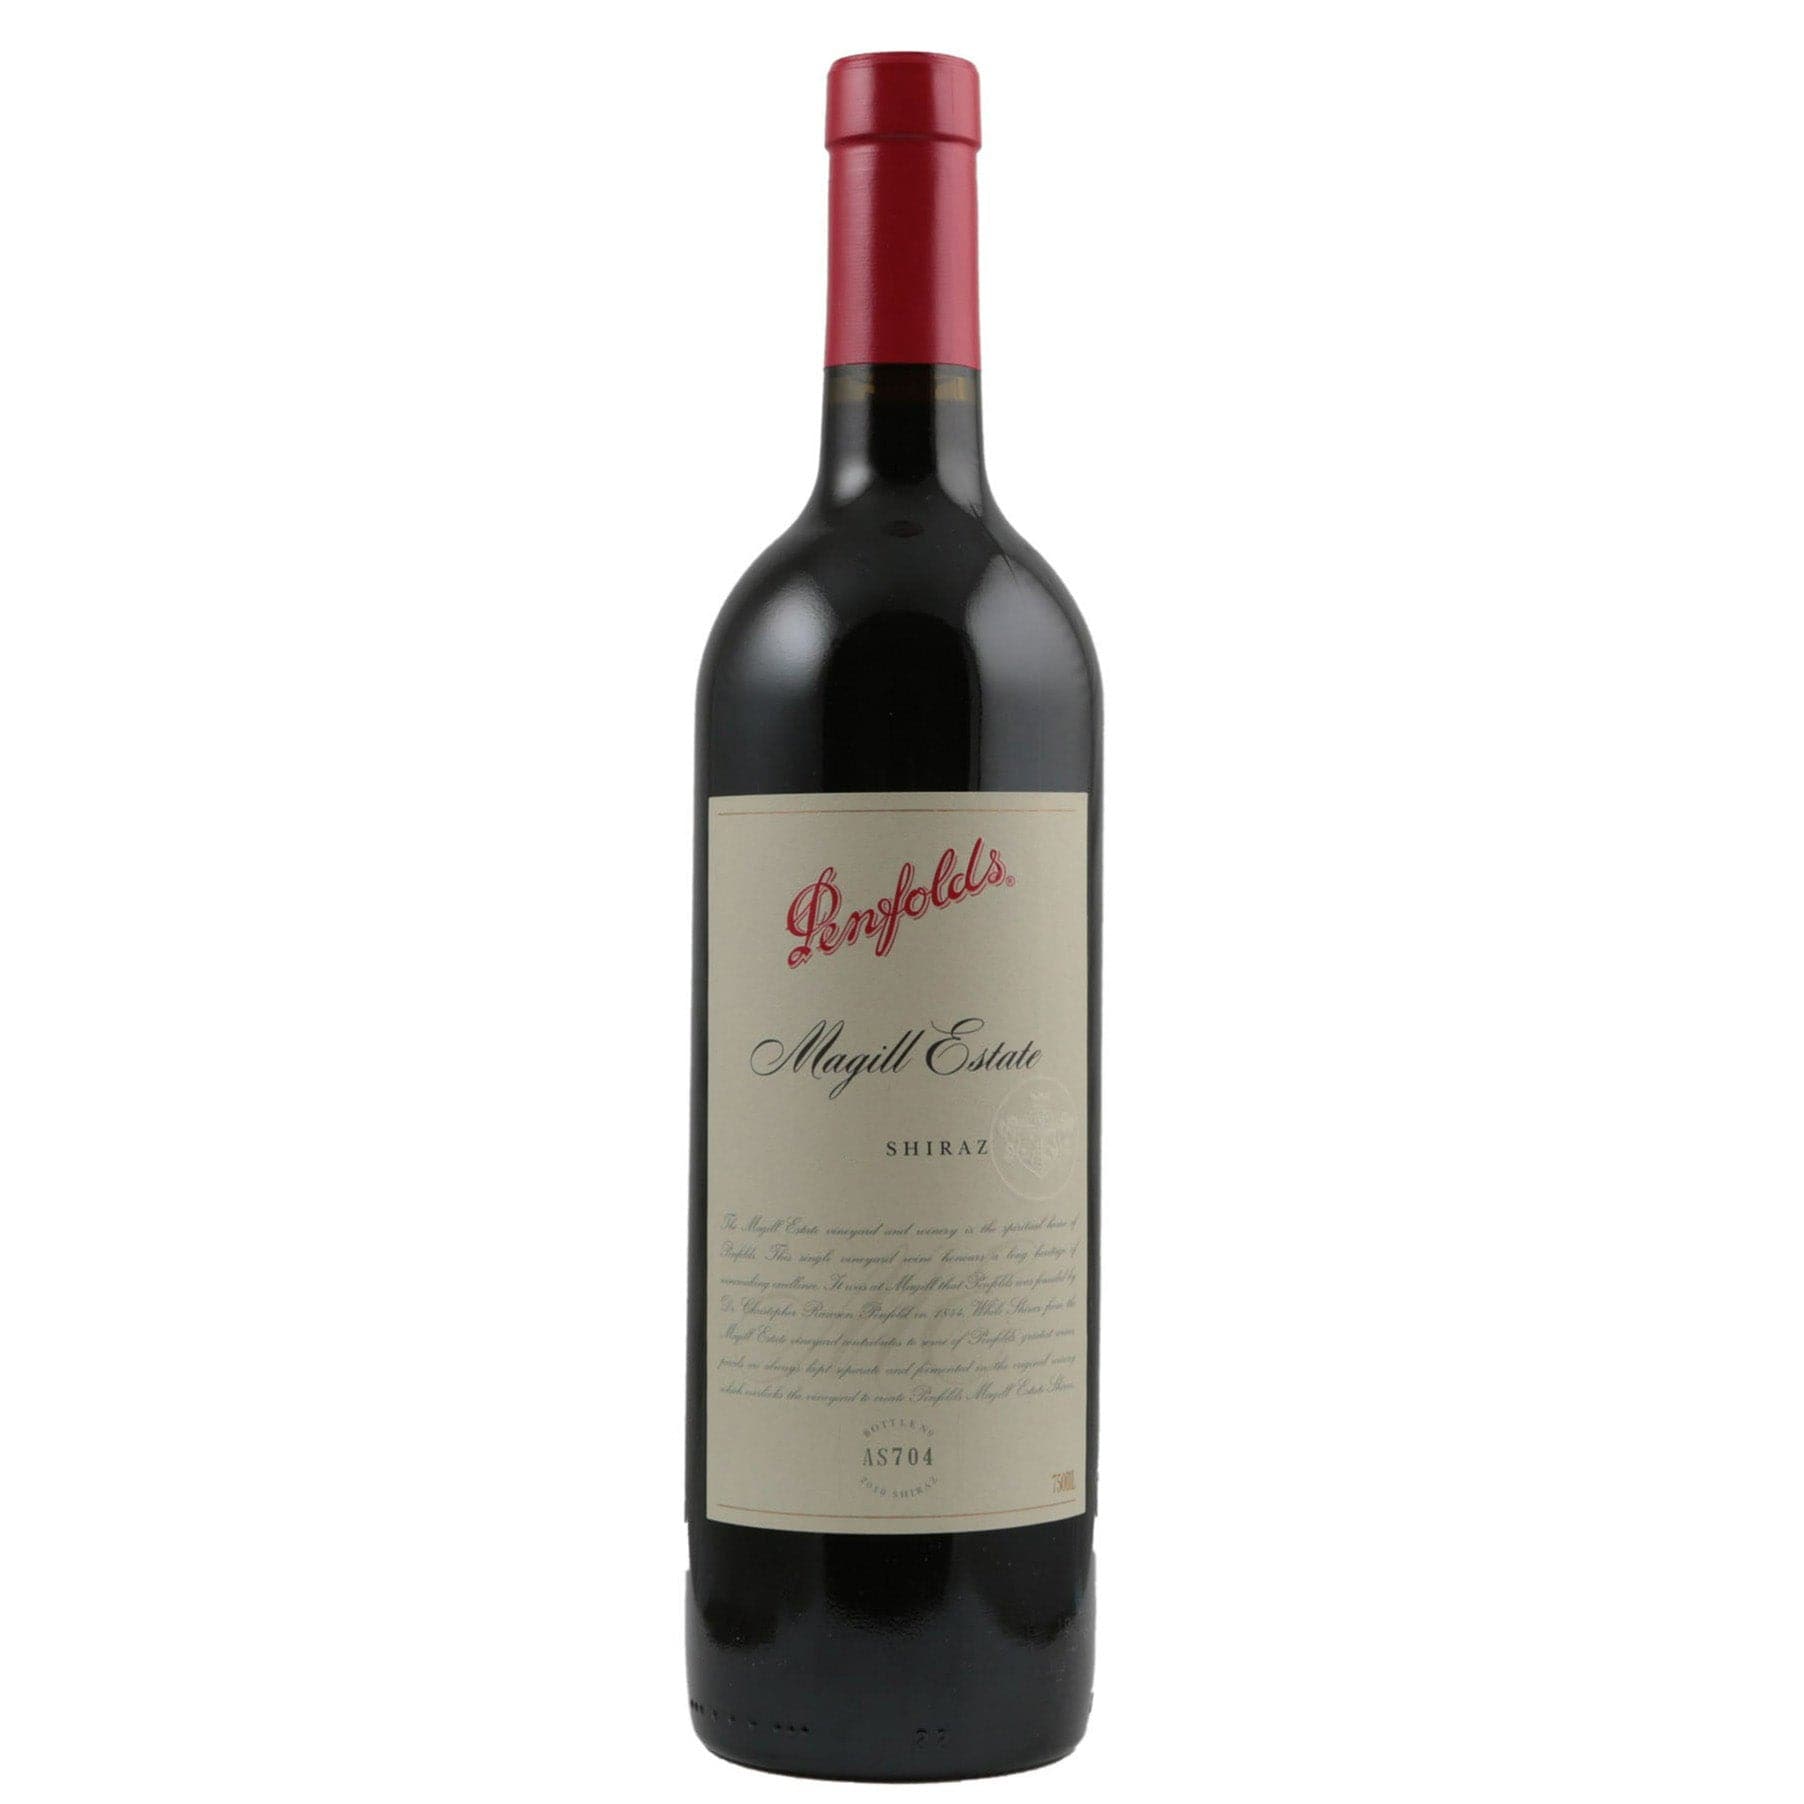 Single bottle of Red wine Penfolds, Magill Estate Shiraz Shiraz, South Australia, 2006 100% Shiraz